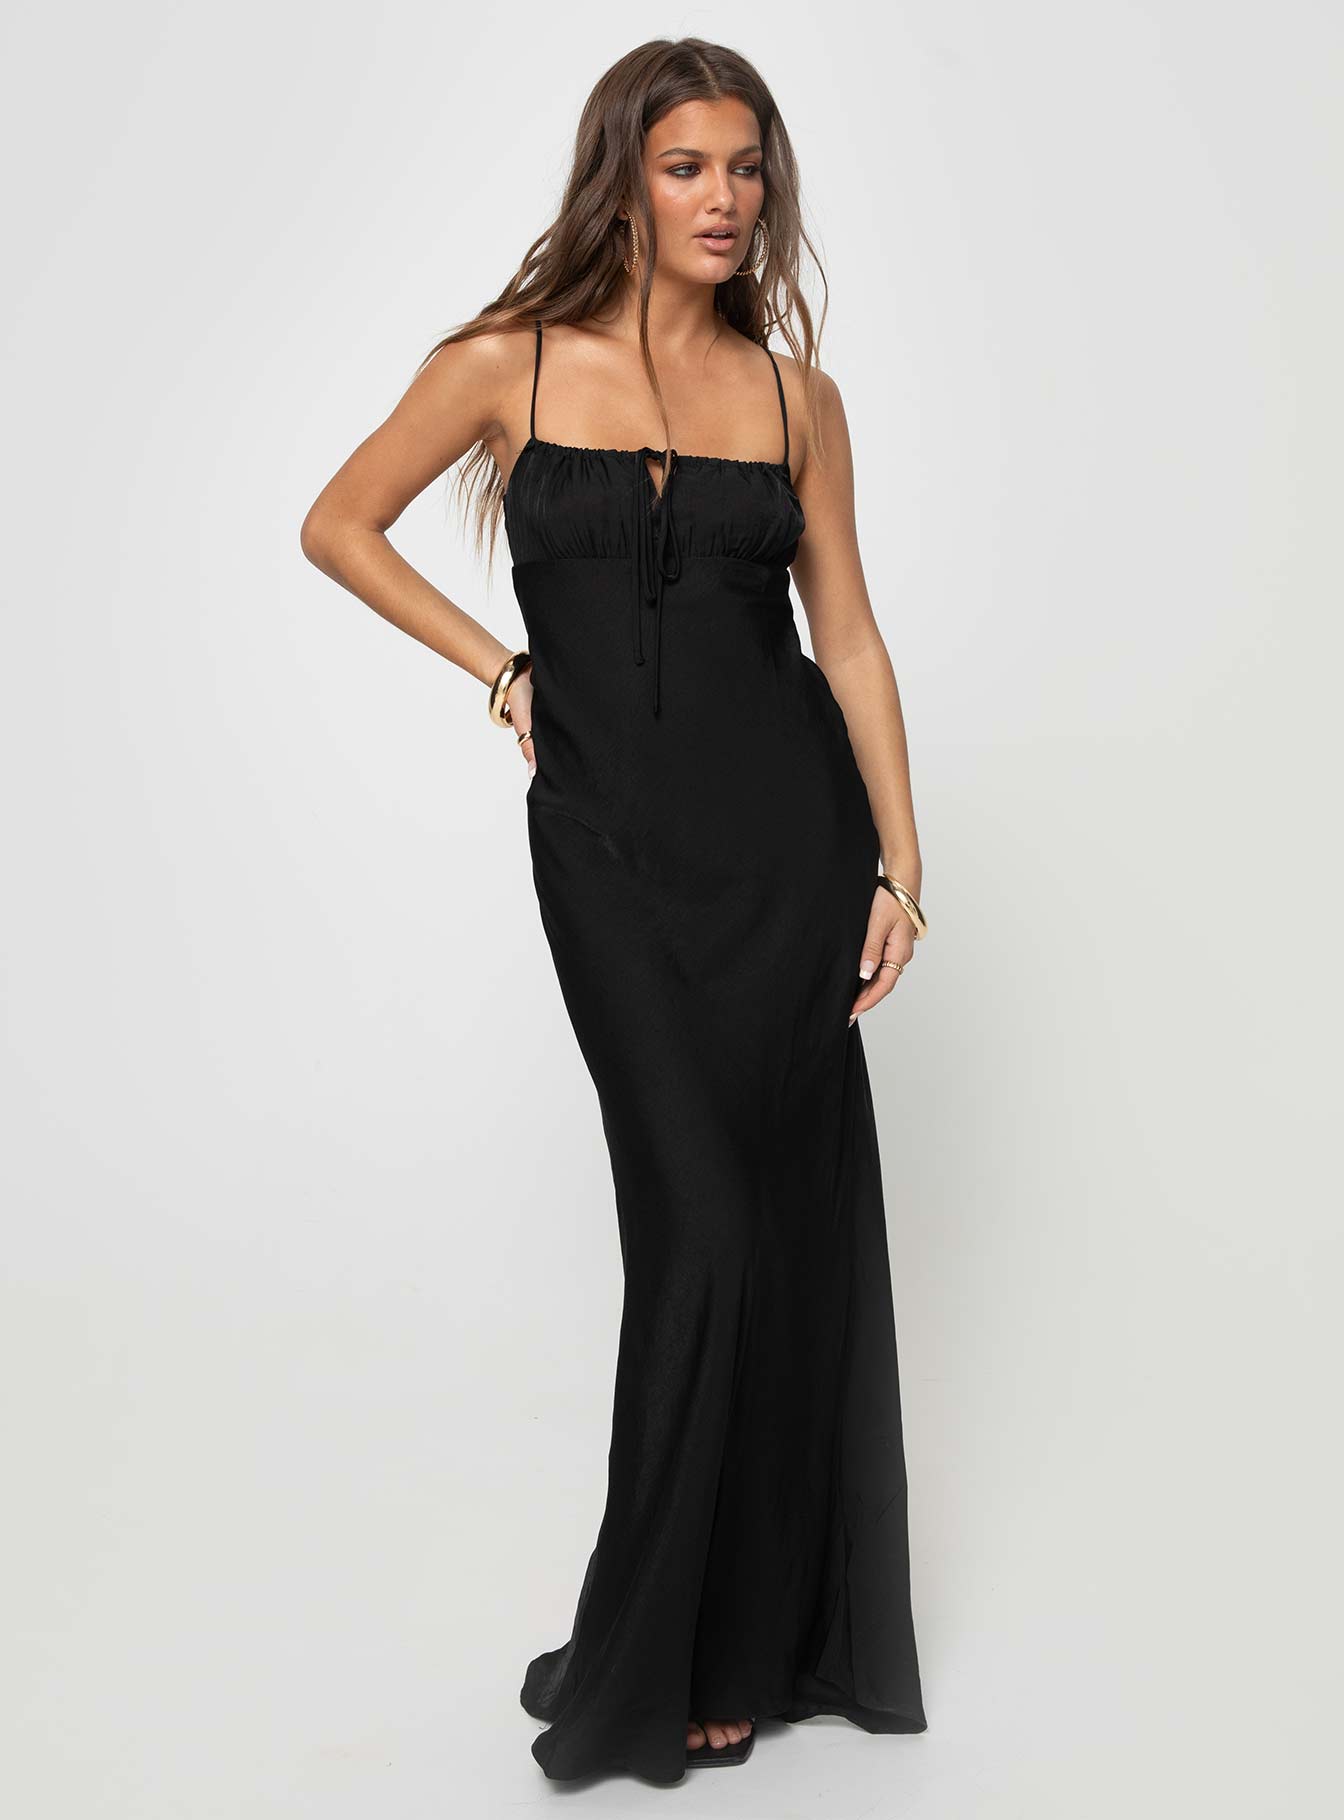 Shop Formal Dress - Noda Maxi Dress Black fifth image